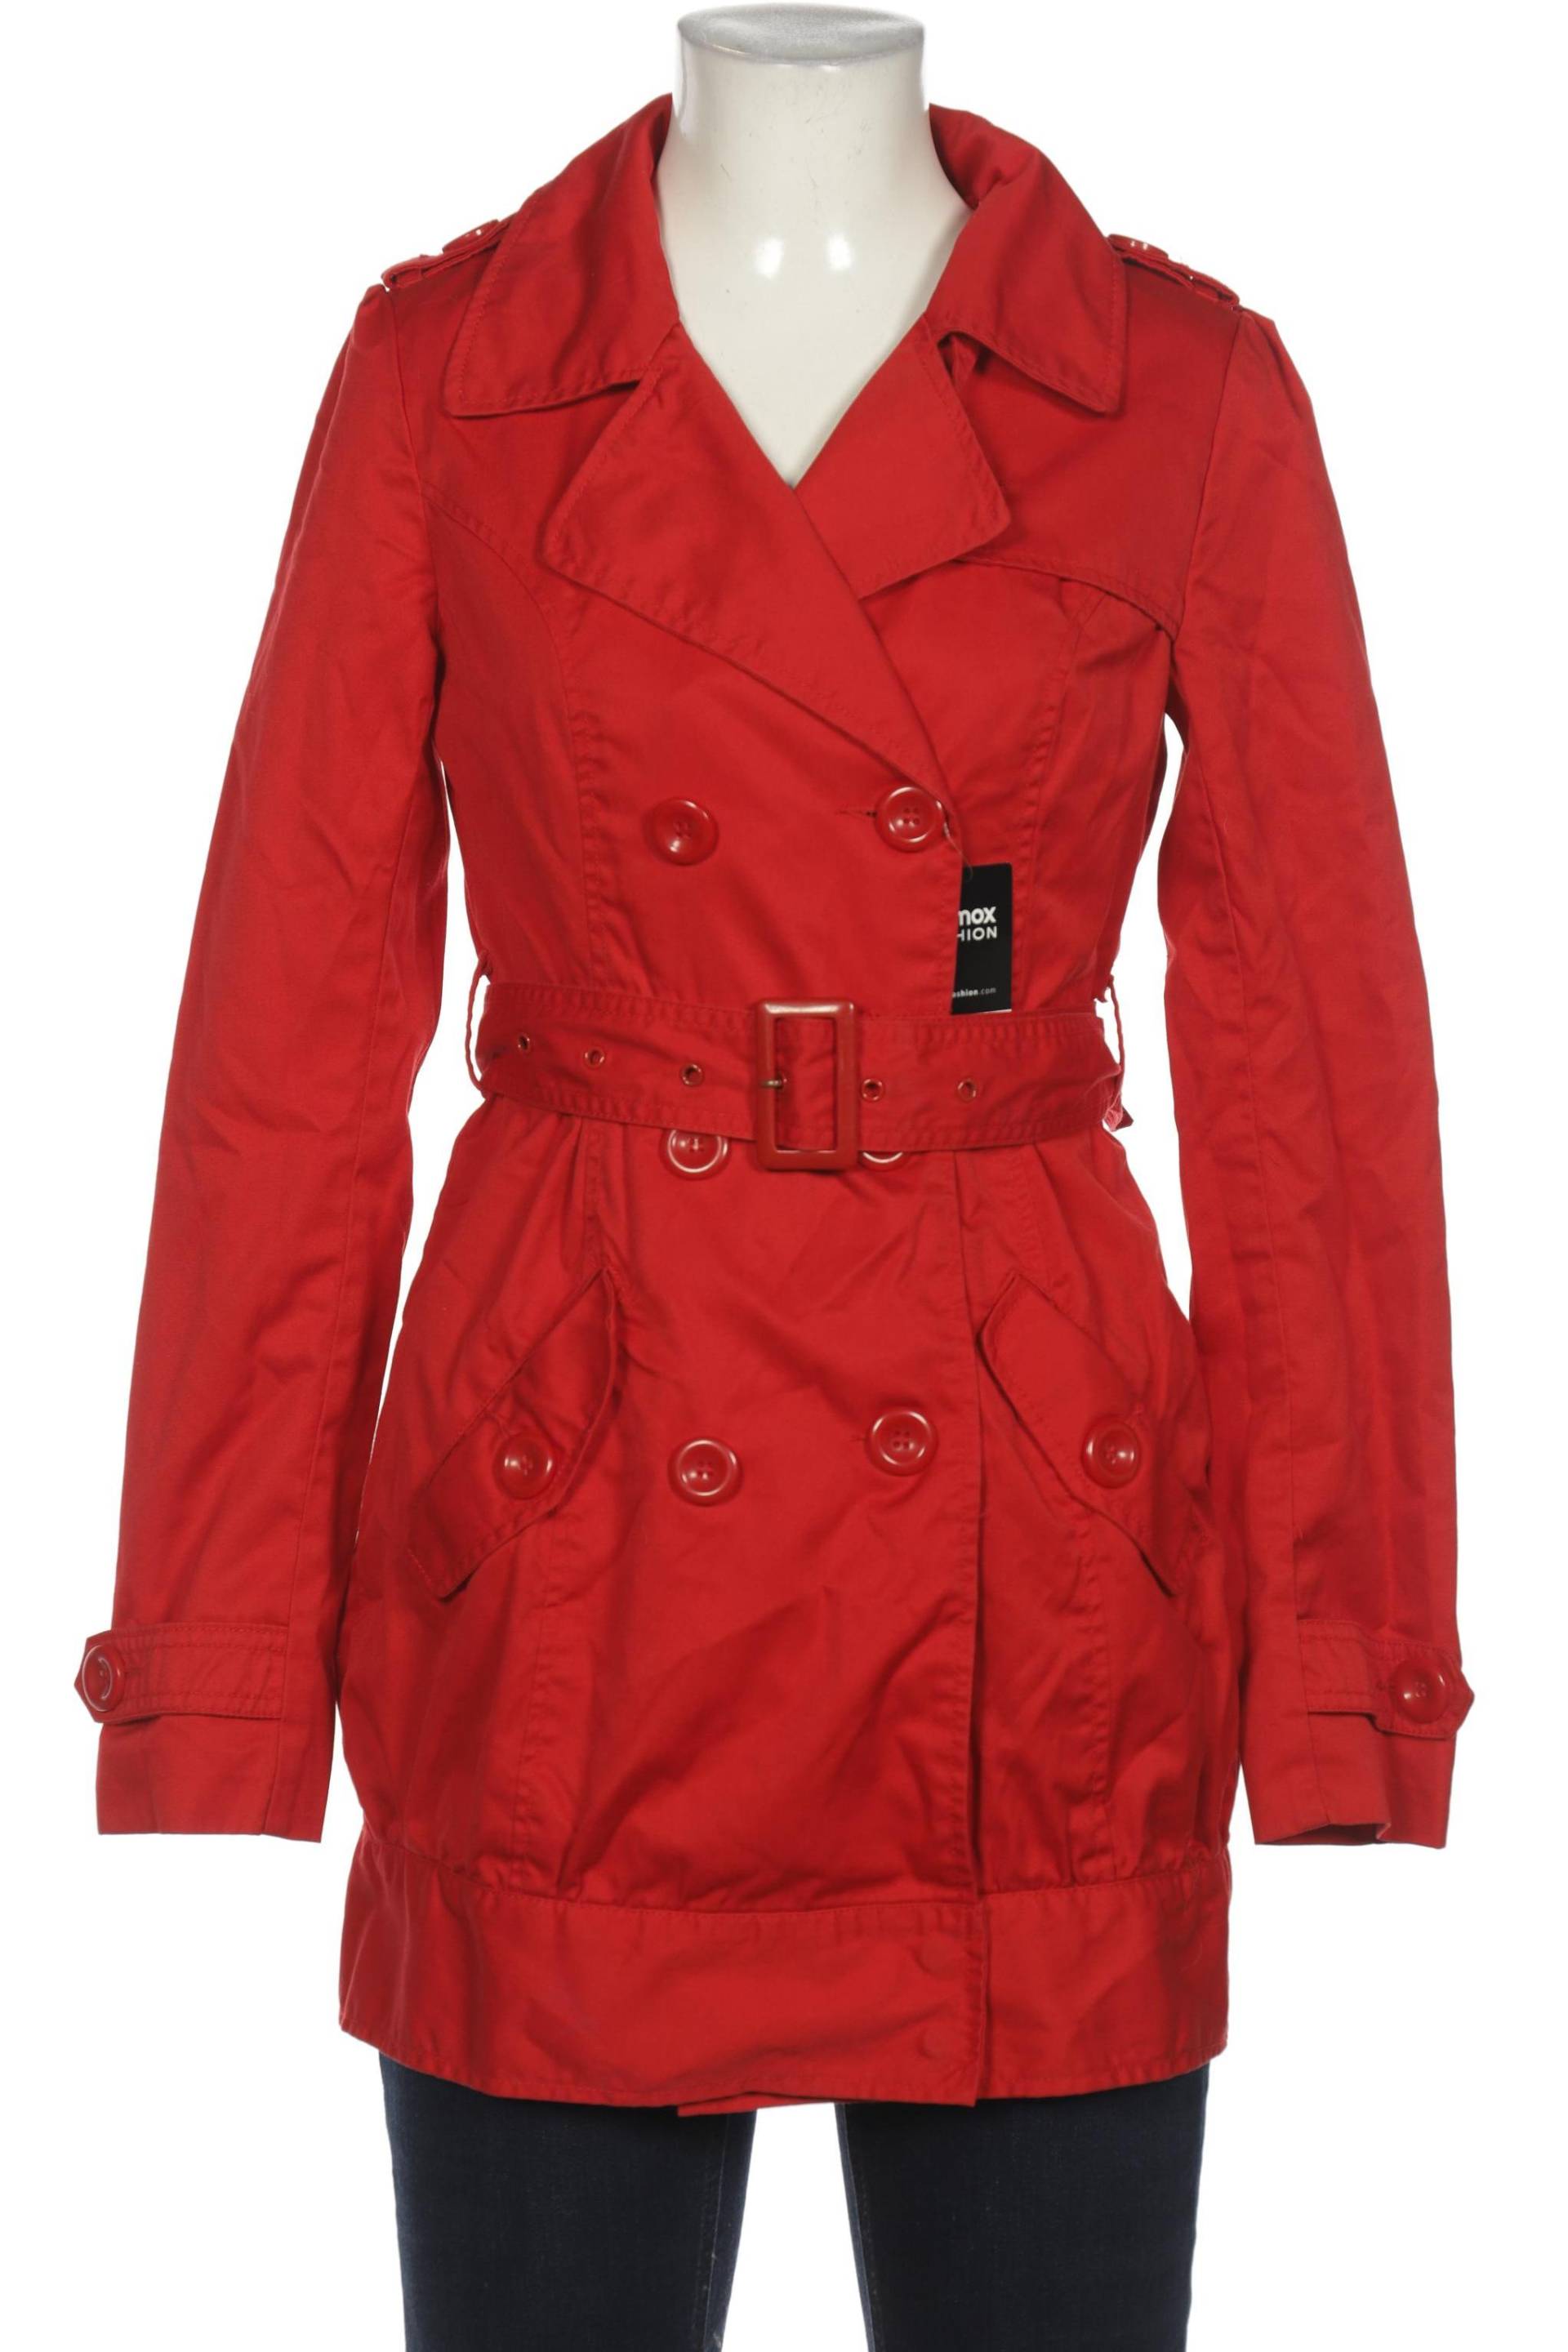 H&M Damen Mantel, rot von H&M